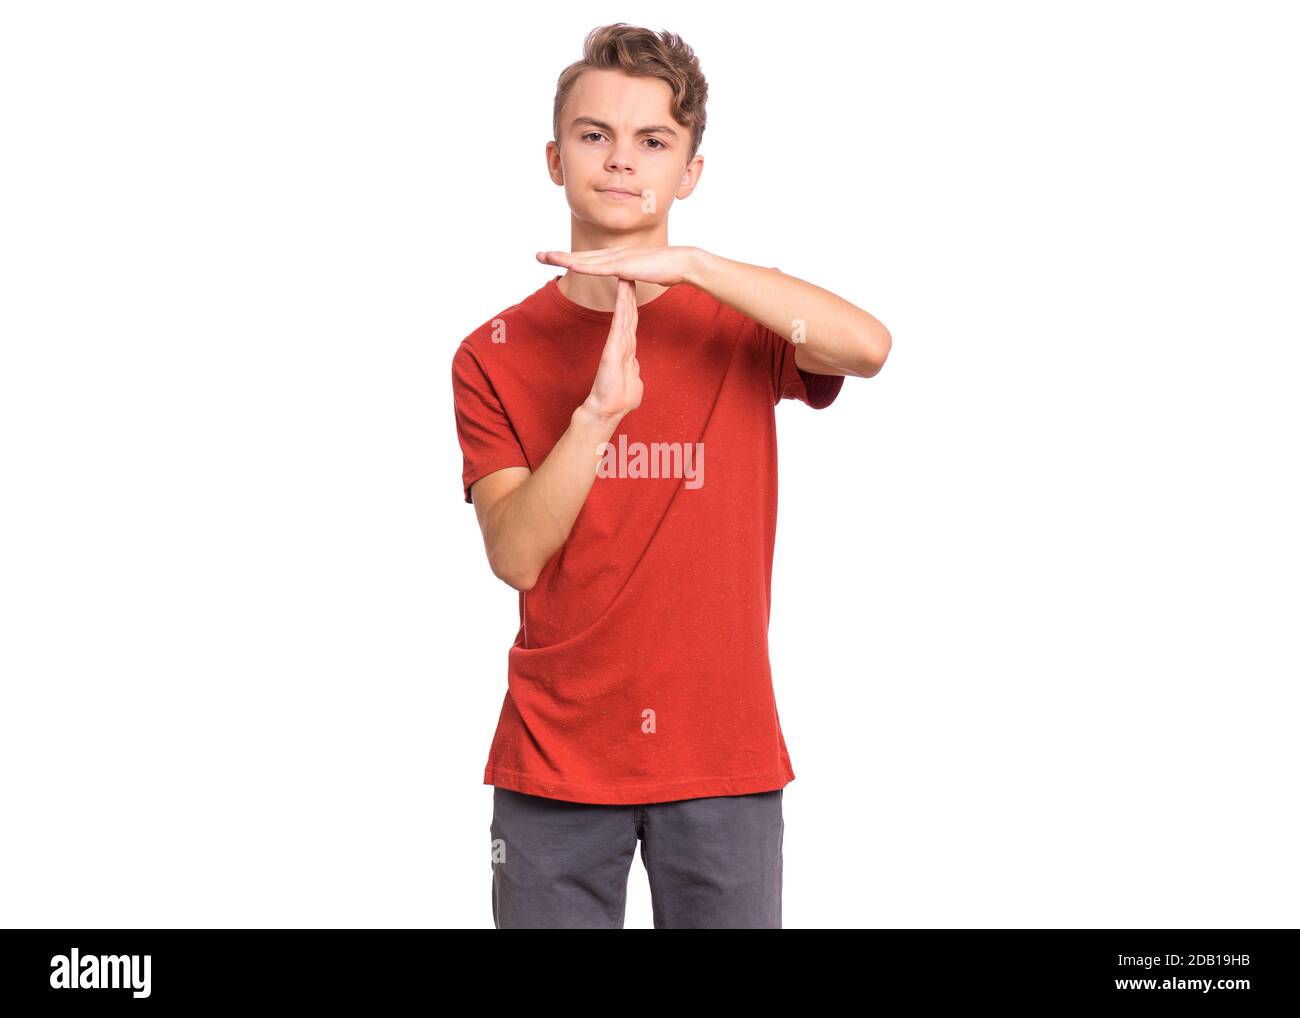 Bel ragazzo teenager che mostra il gesto del timeout con le mani, isolato su sfondo bianco Foto Stock